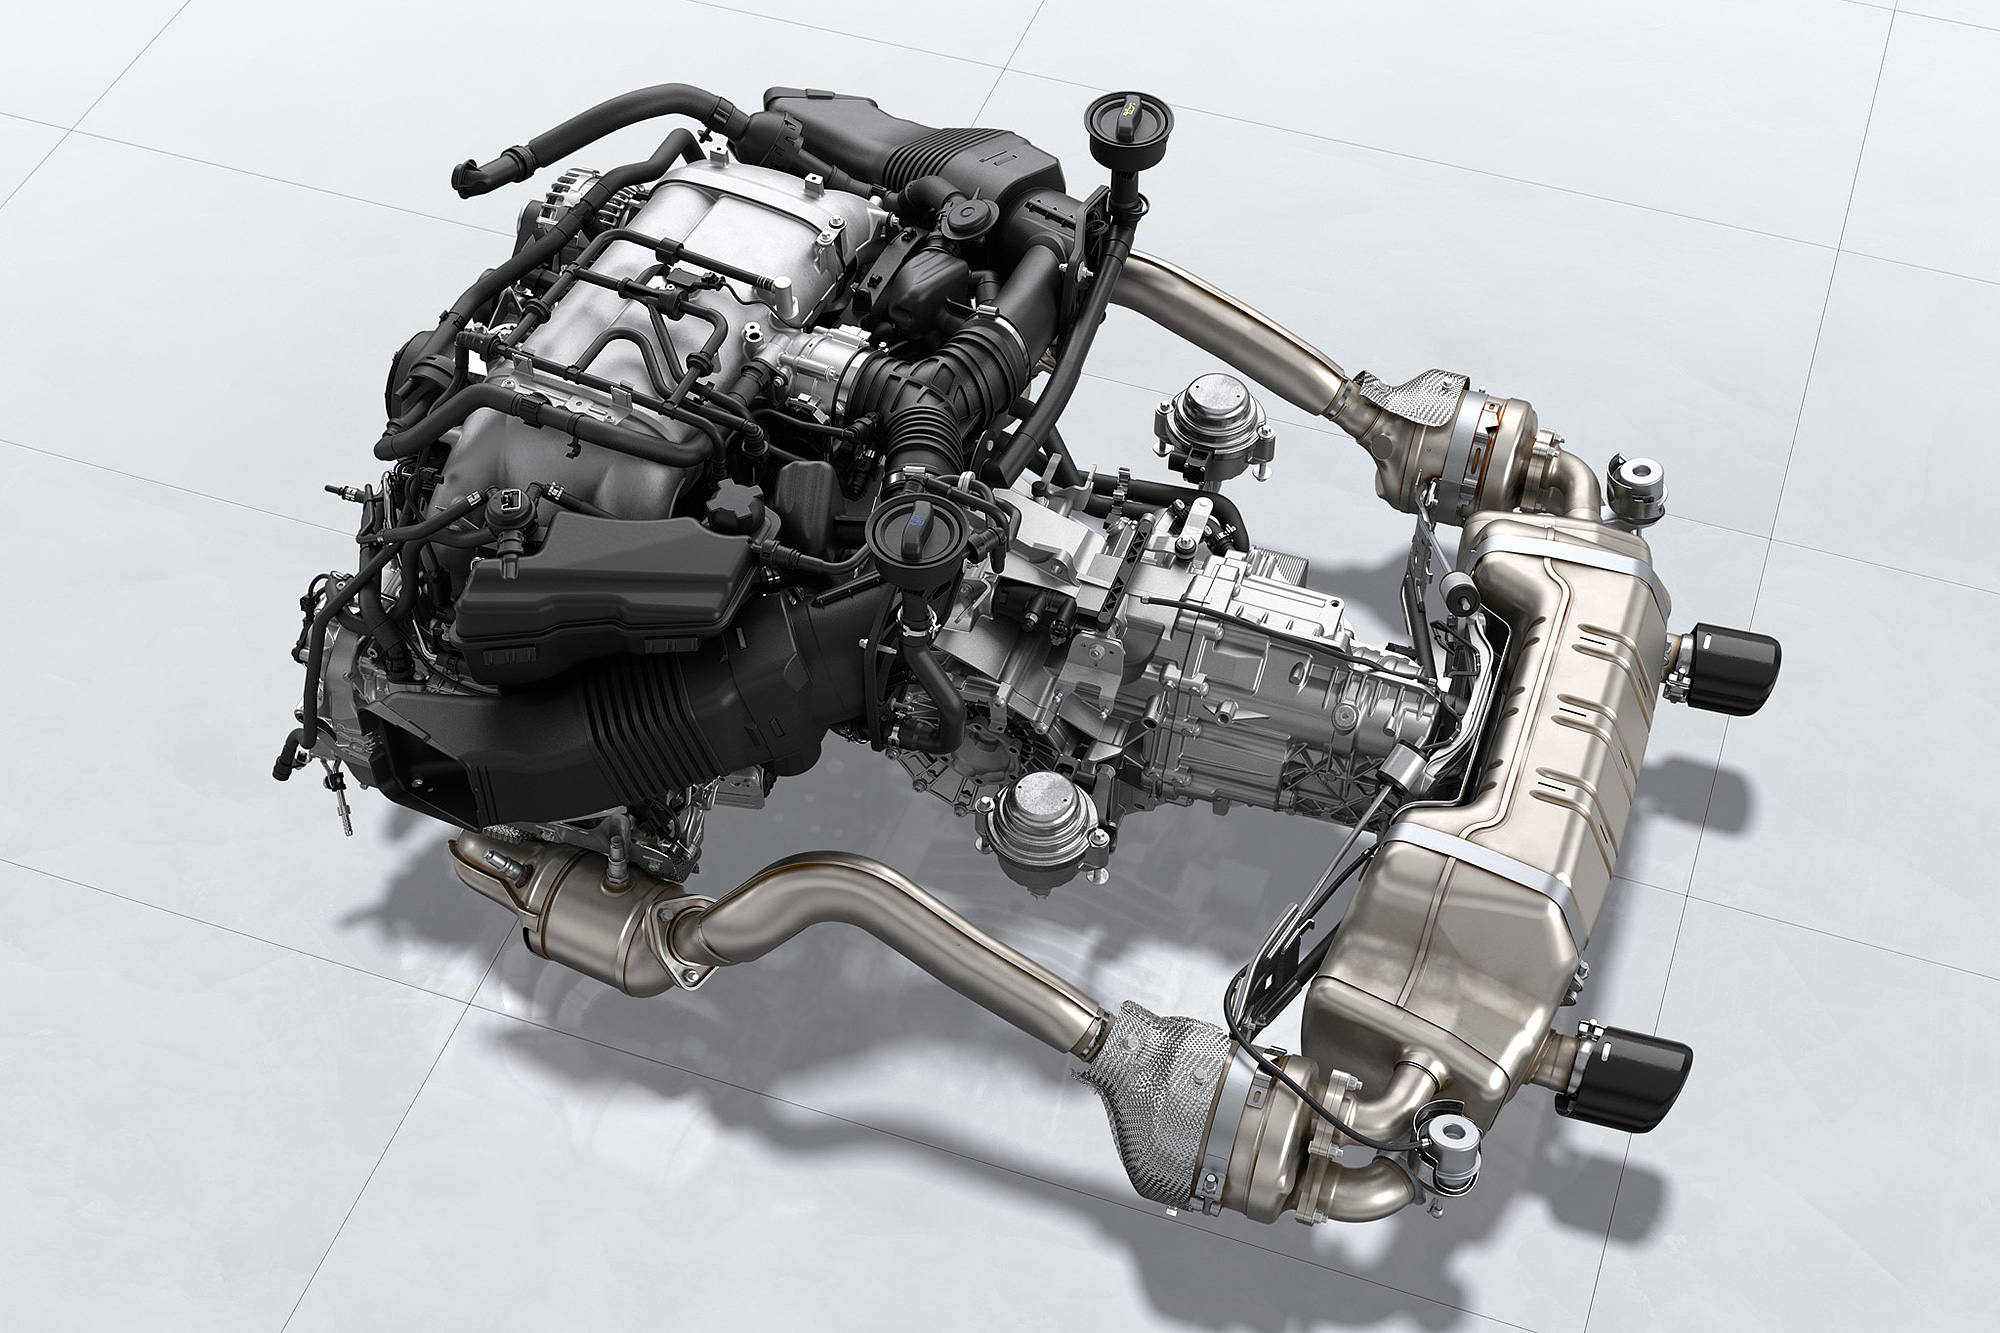 718 Cayman GT4 與 718 Boxster 搭載的 4.0 升水平對臥六缸自然進氣引擎，是由 911 Carrera 搭載的水平對臥六缸引擎修改而來。